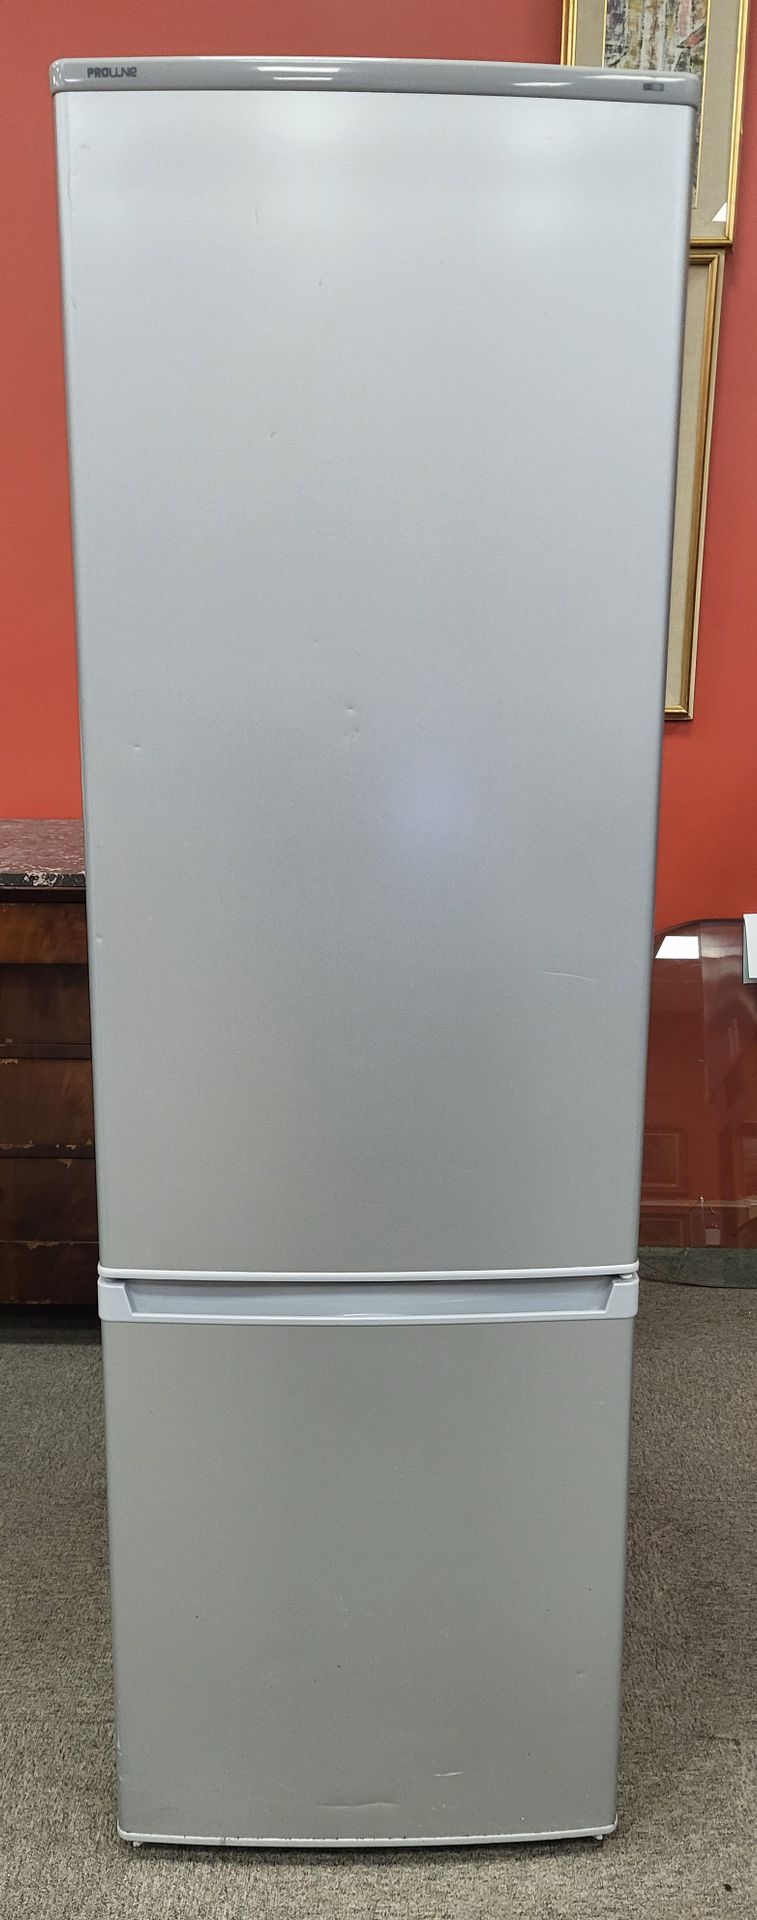 Null PROLINE refrigerator/freezer, Dim. 173 x 55 x 54 cm